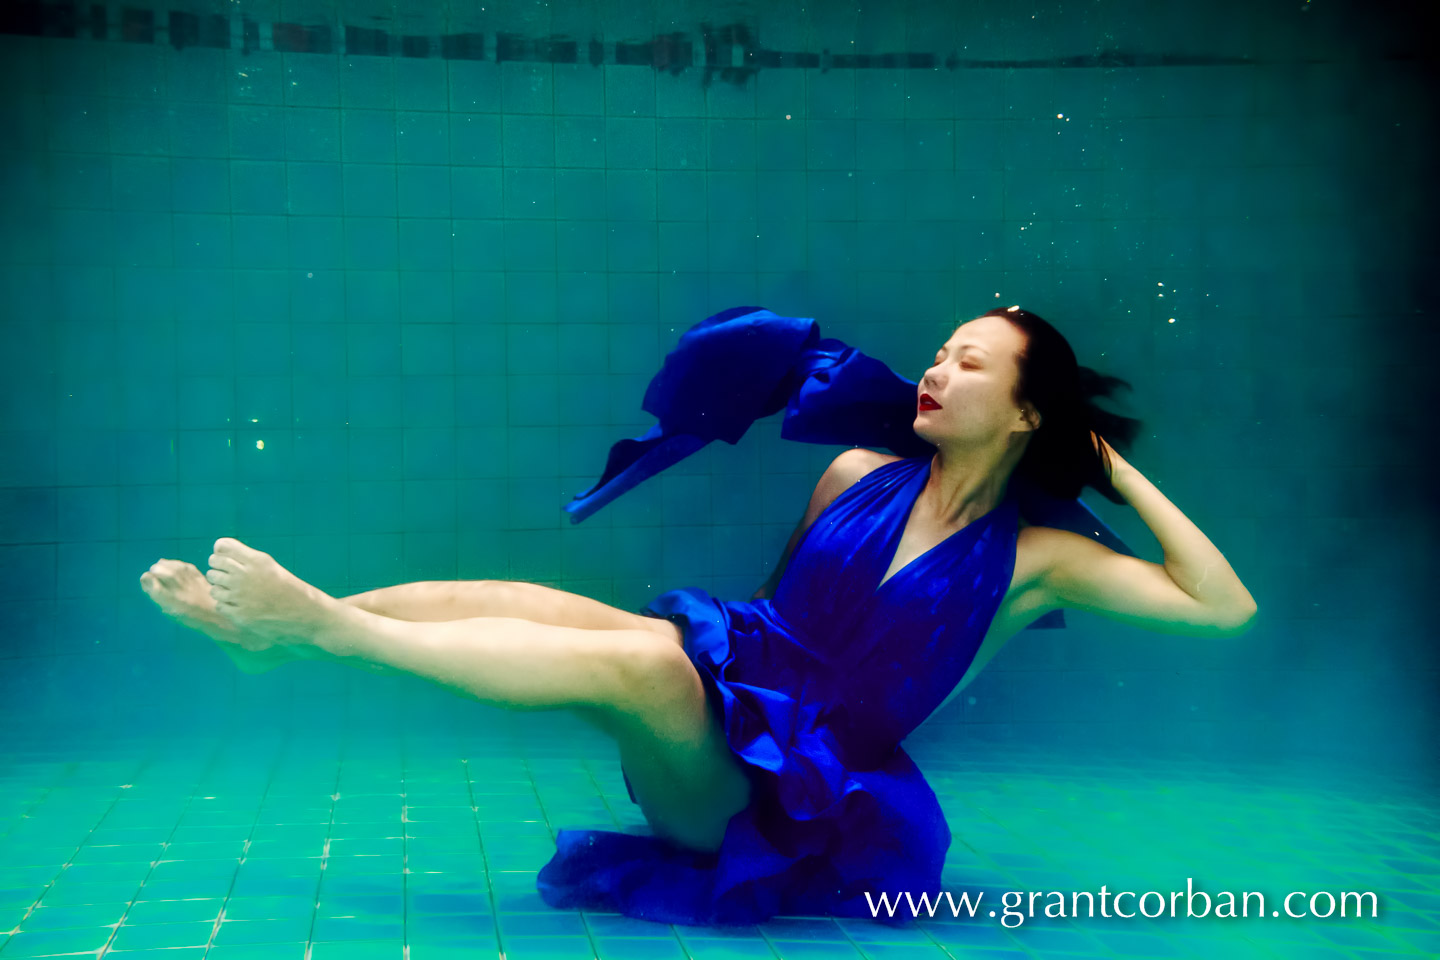 underwater pool portrait photography